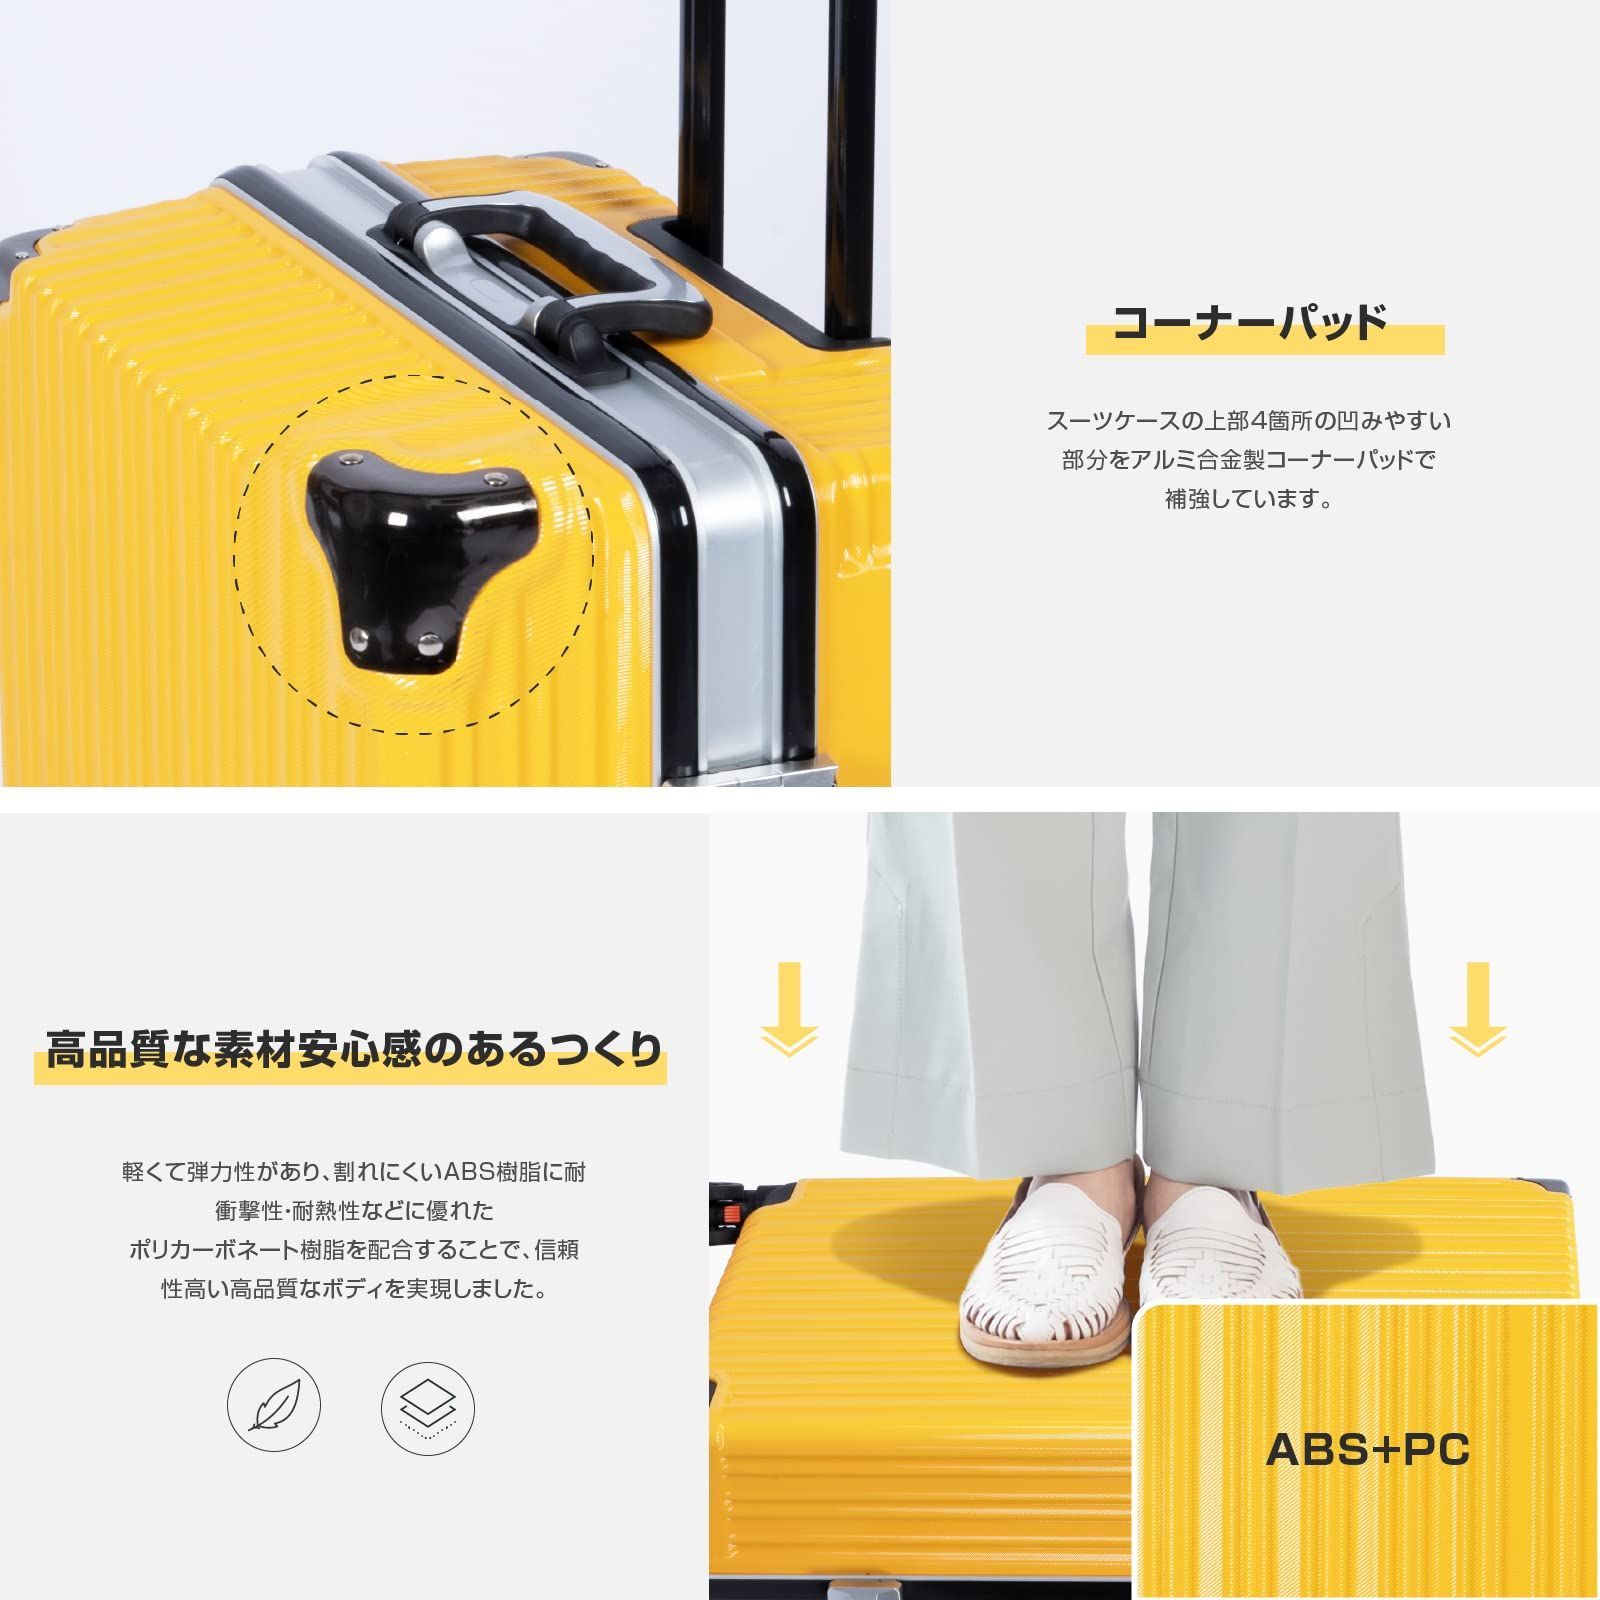 新品 キャリーケース スーツケース キャリーバッグ イエロー Sサイズ